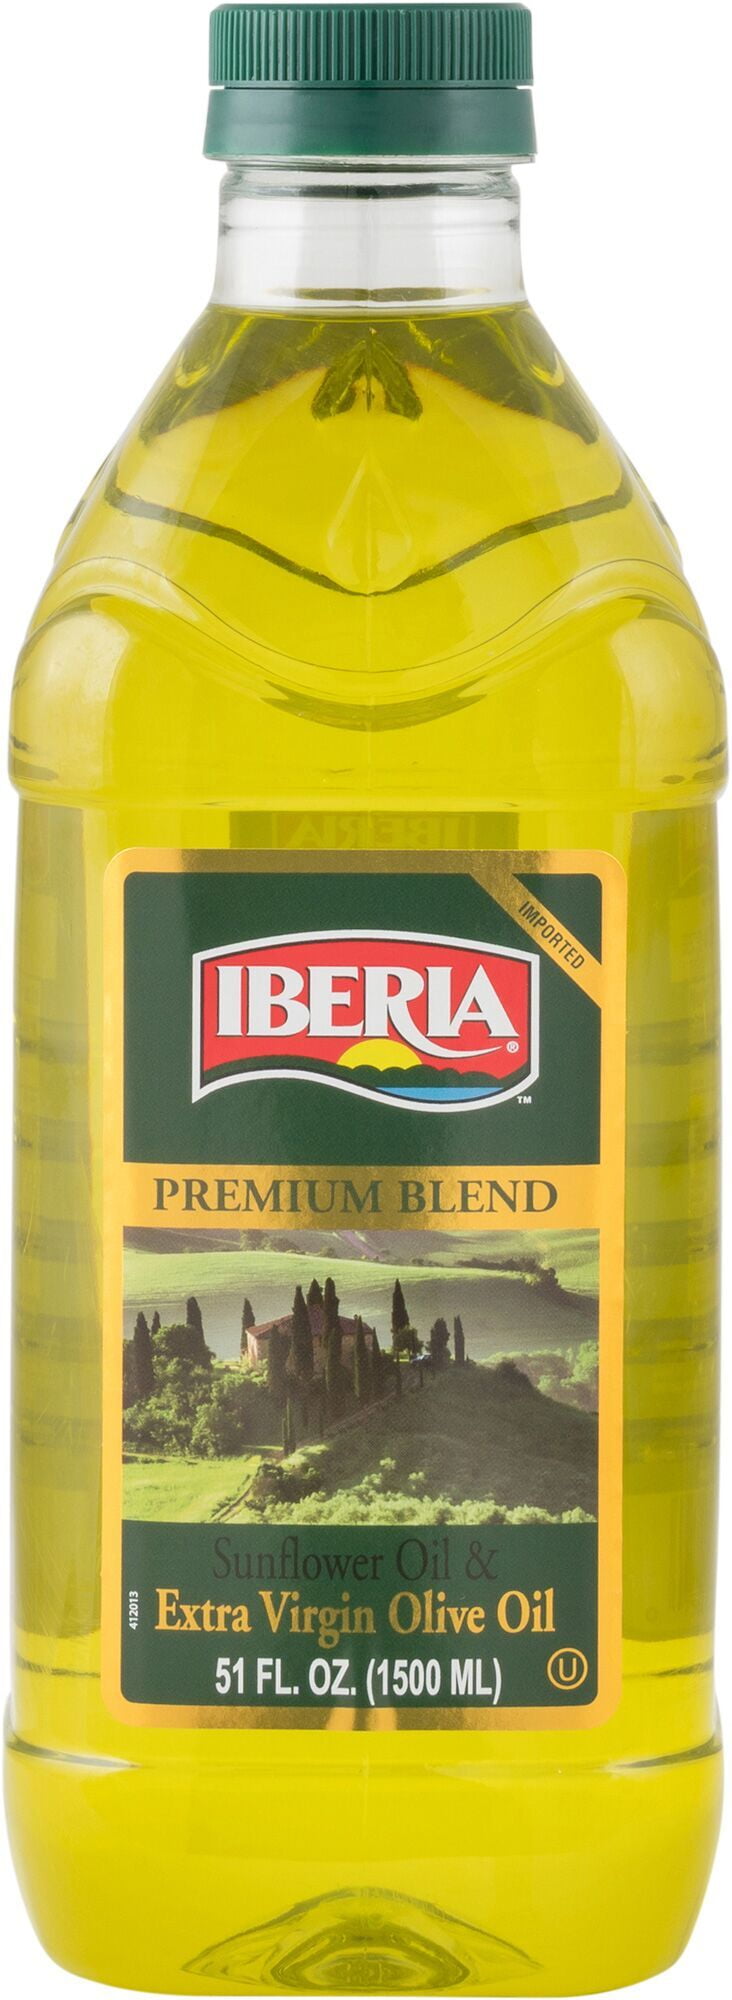 Iberia Premium Blend Sunflower Oil & Extra Virgin Olive Oil, 51 fl oz